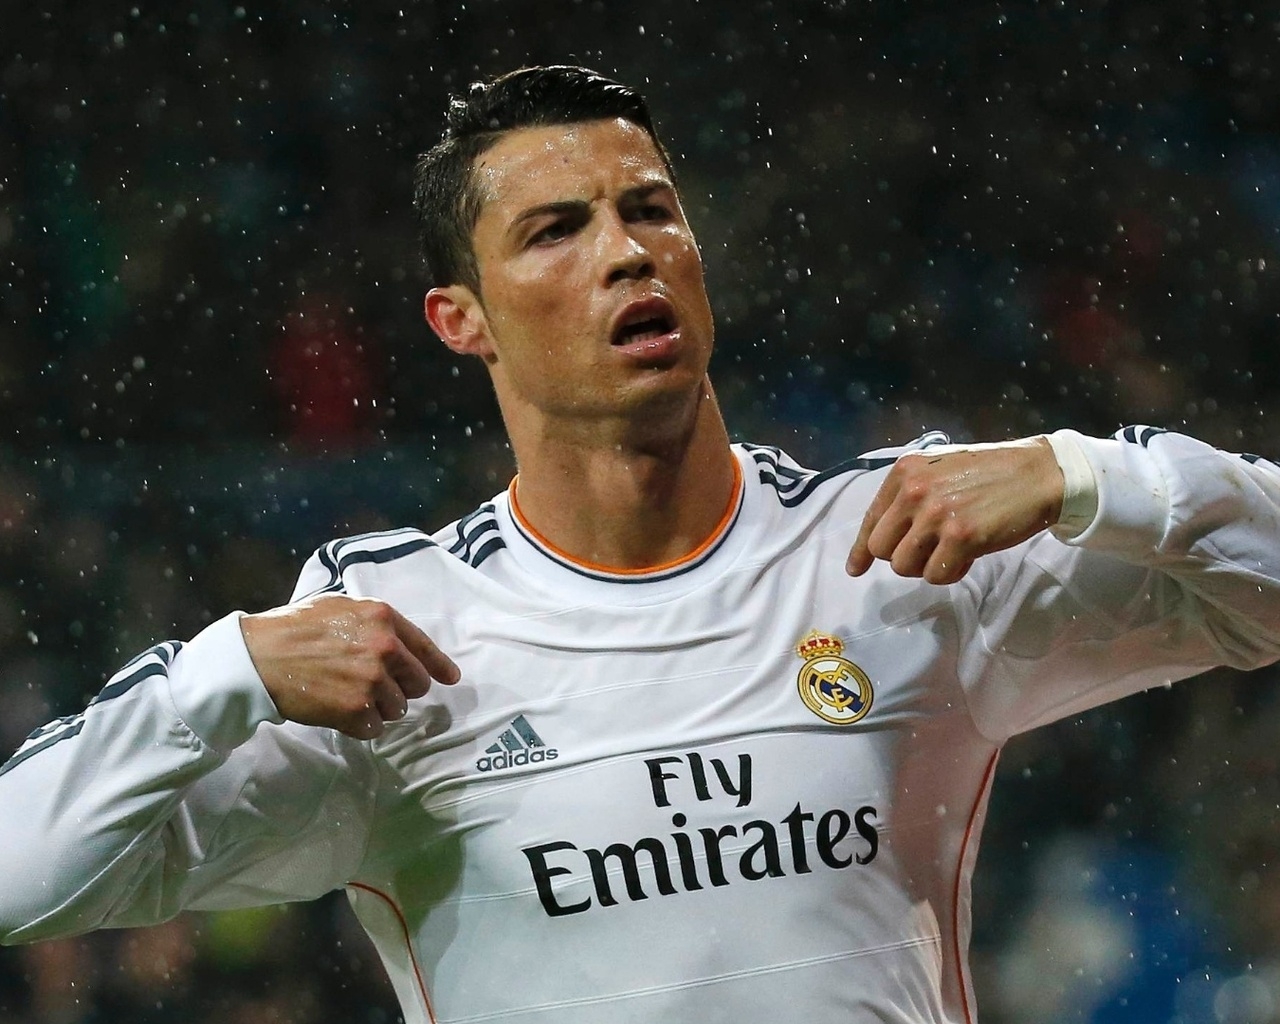 Cristiano Ronaldo in Rain for 1280 x 1024 resolution